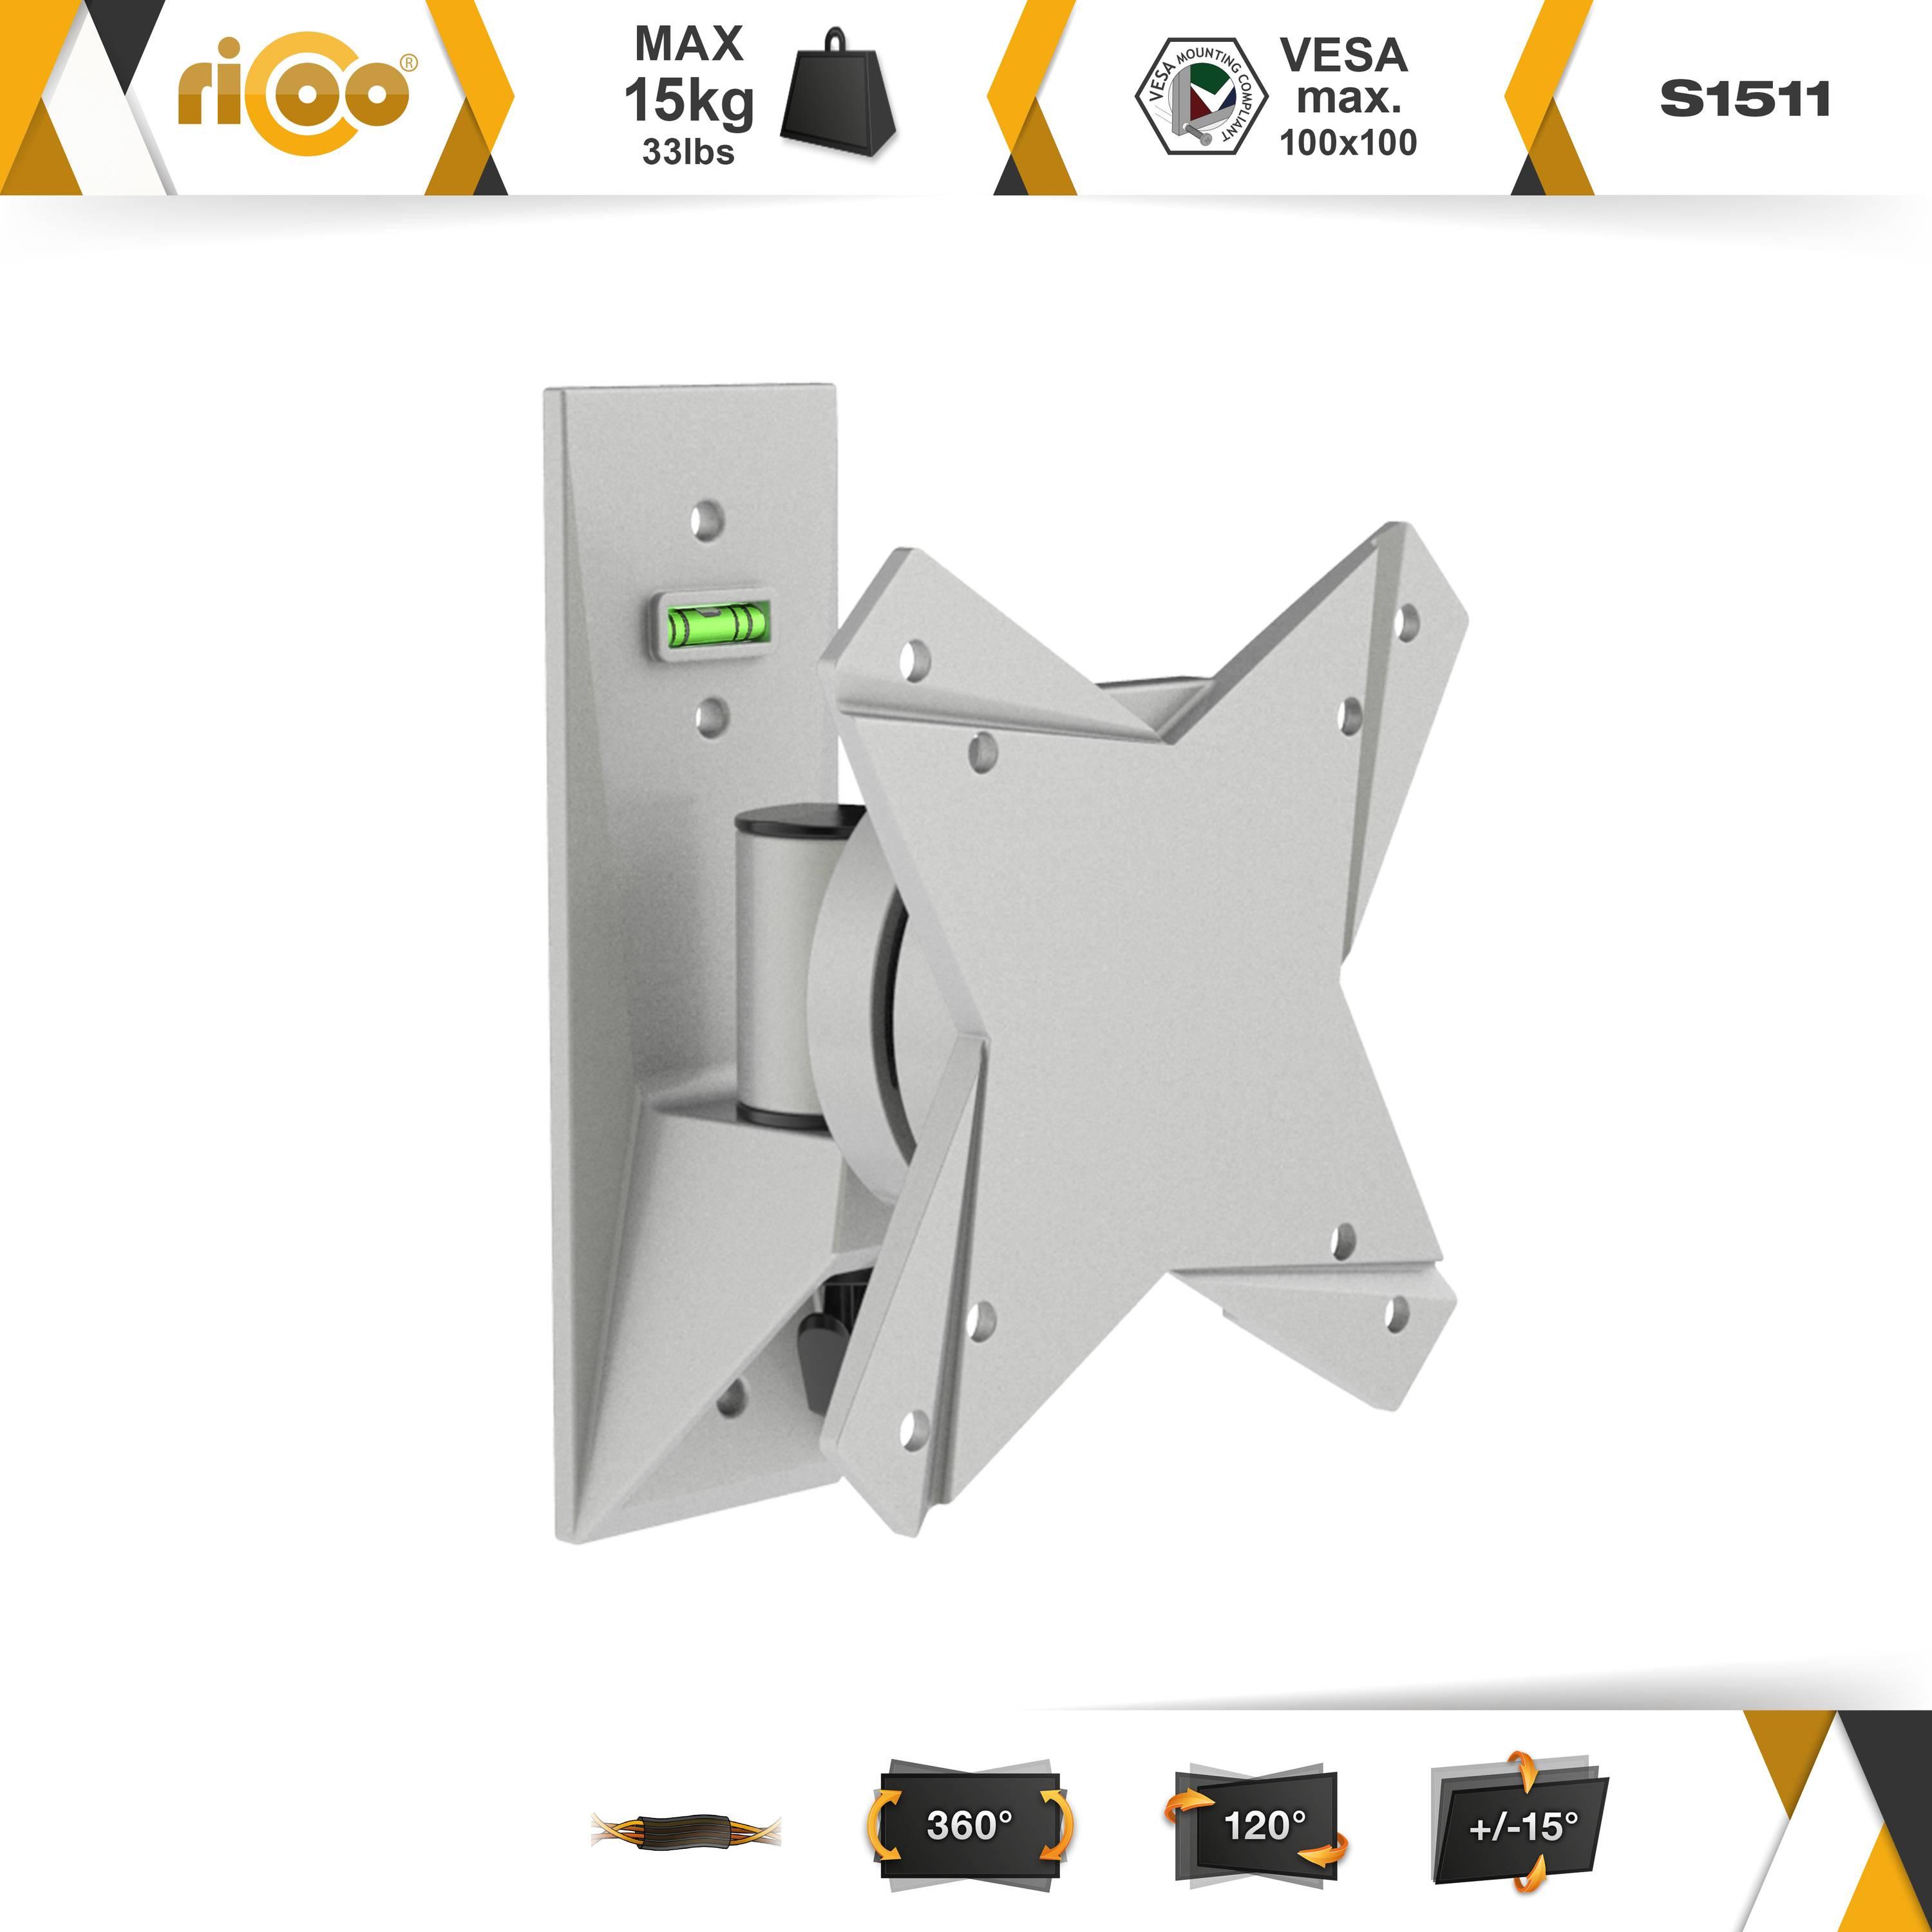 RICOO S1511 neigbar schwenkbar auch x für Wand universal Monitor bis VESA curved 100 100 Wandhalterung, TV Grau Halterung